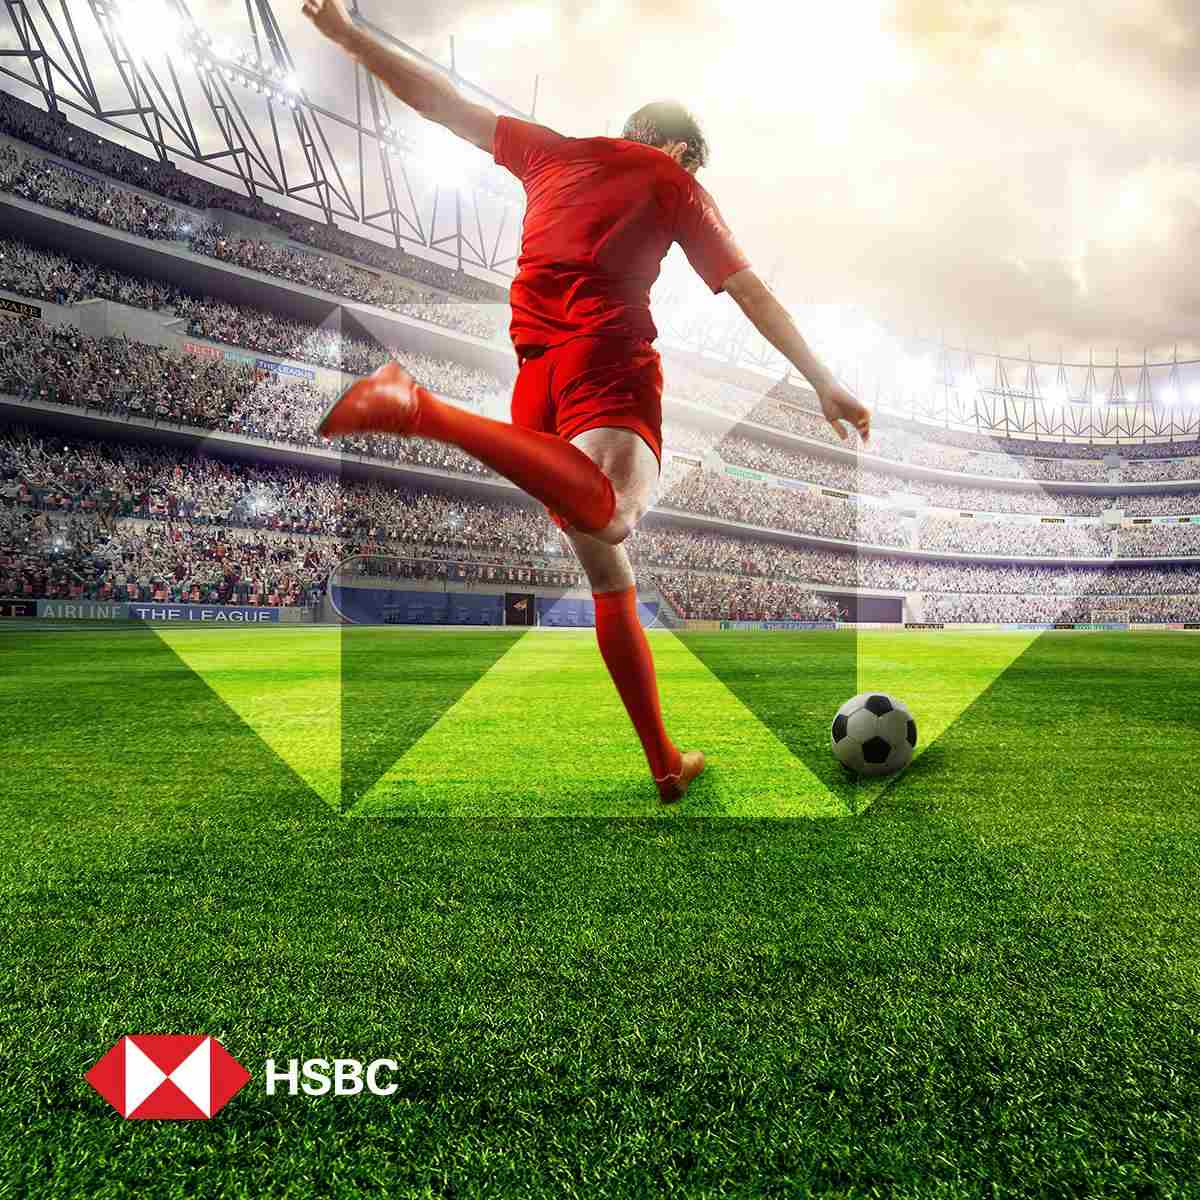 Chiến lược Marketing của HSBC - Tài trợ lớn và hoạt động nâng cao giá trị của mình